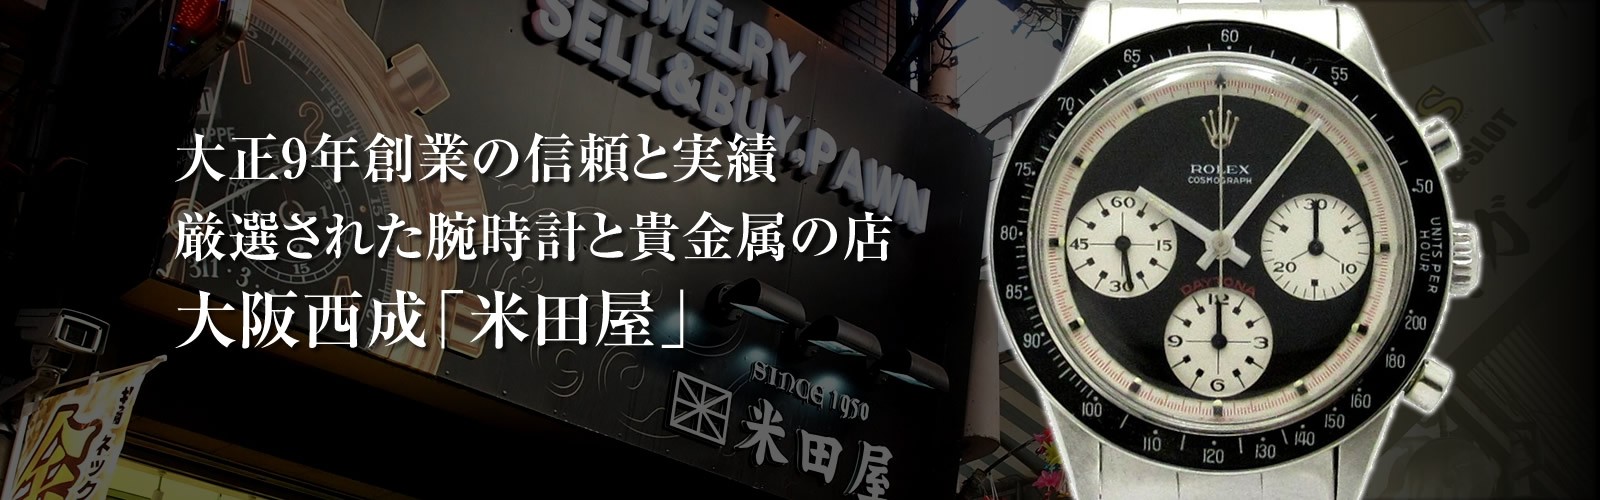 ロレックス・アンティーク腕時計 中古品販売買取なら大阪西成区の米田屋